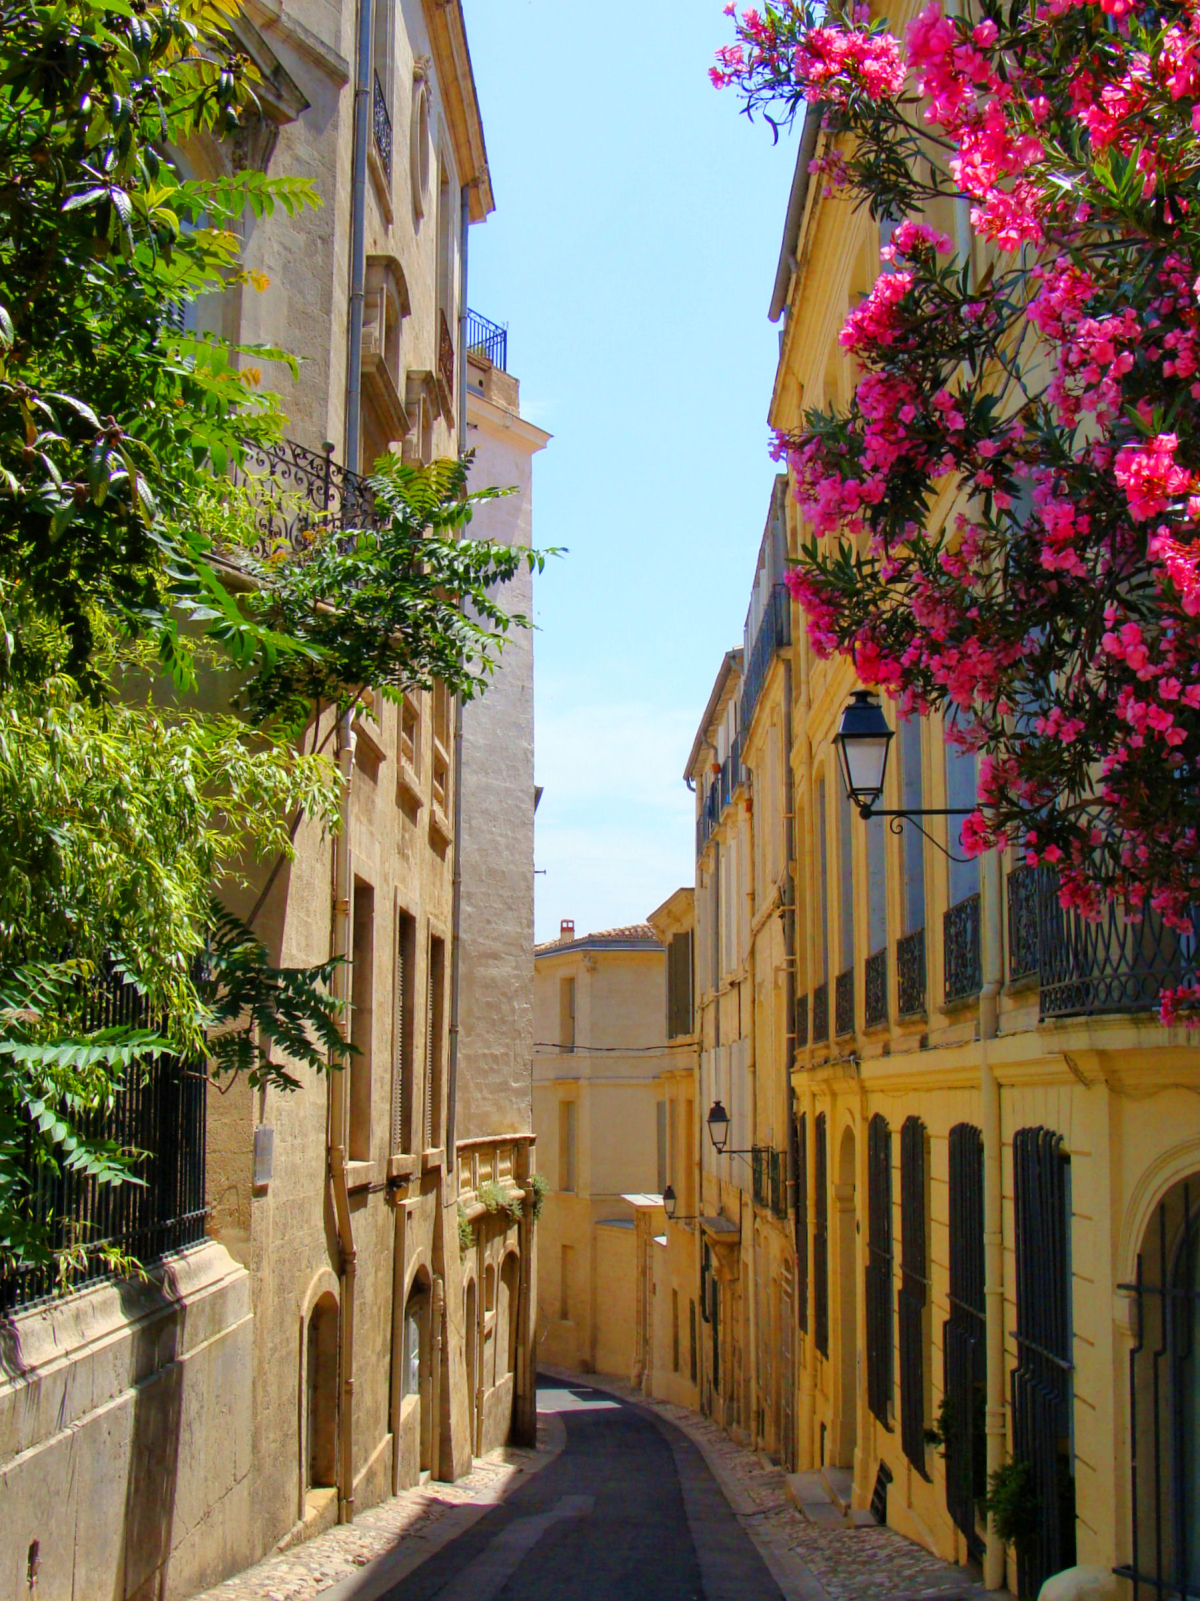 Louer un appartement à Montpellier - Vue d’une ruelle fleurie du centre de Montpellier